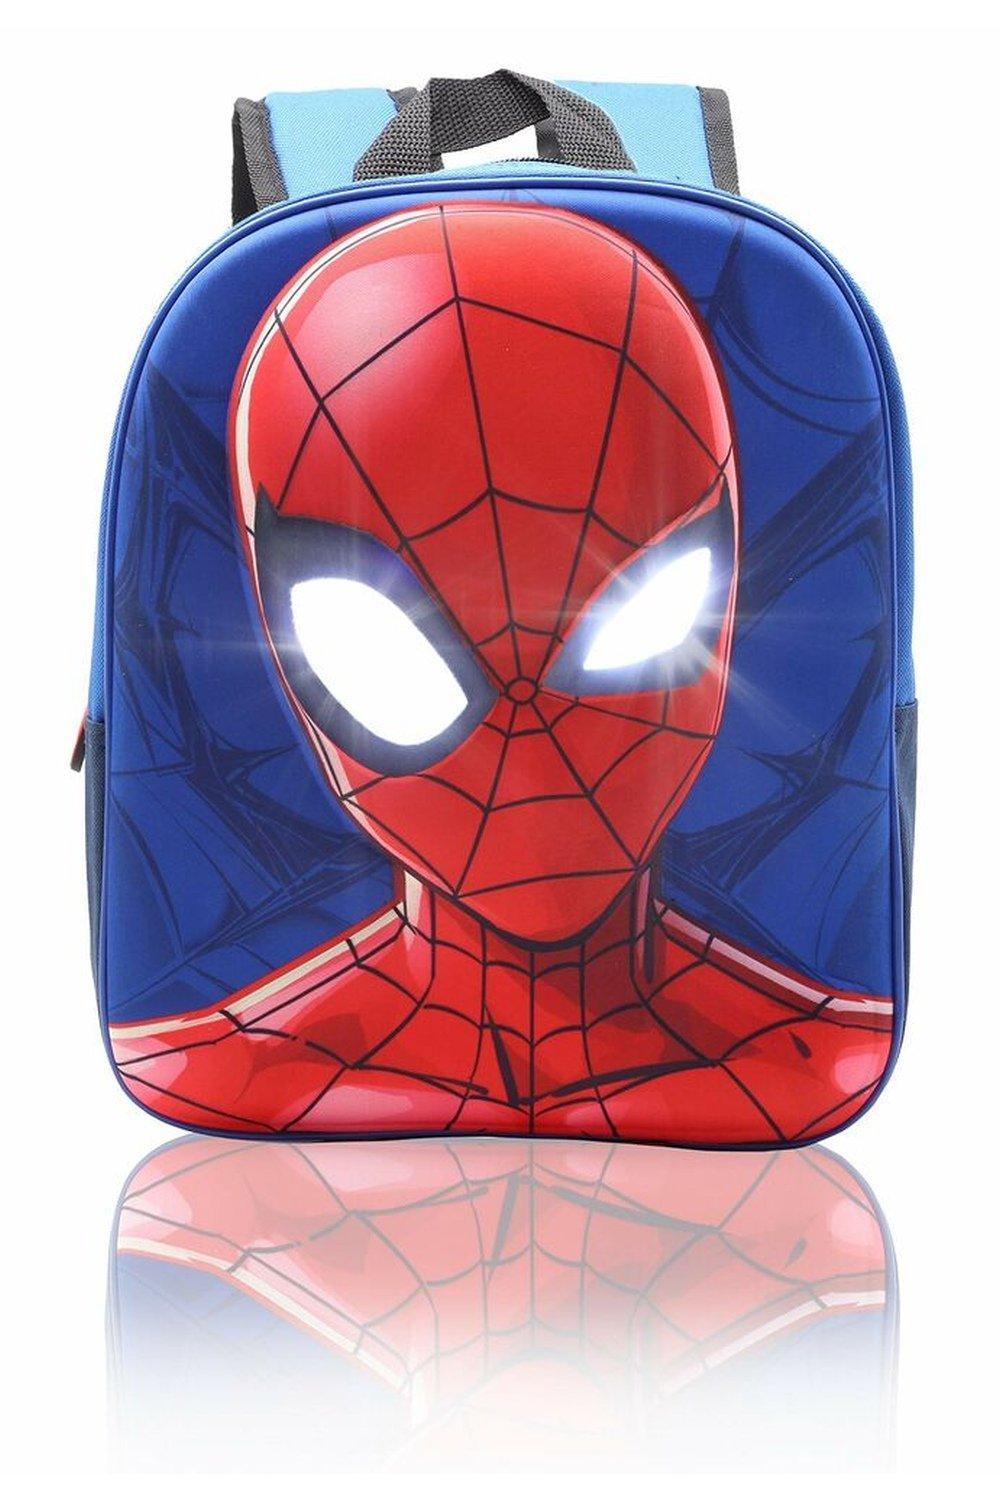 Рюкзак Человека-паука с подсветкой глаз Marvel, синий 2022 colomb детский школьный рюкзак jananese randoseru для мальчиков ортопедический рюкзак линейный дизайн детский роскошный школьный рюкзак mochila